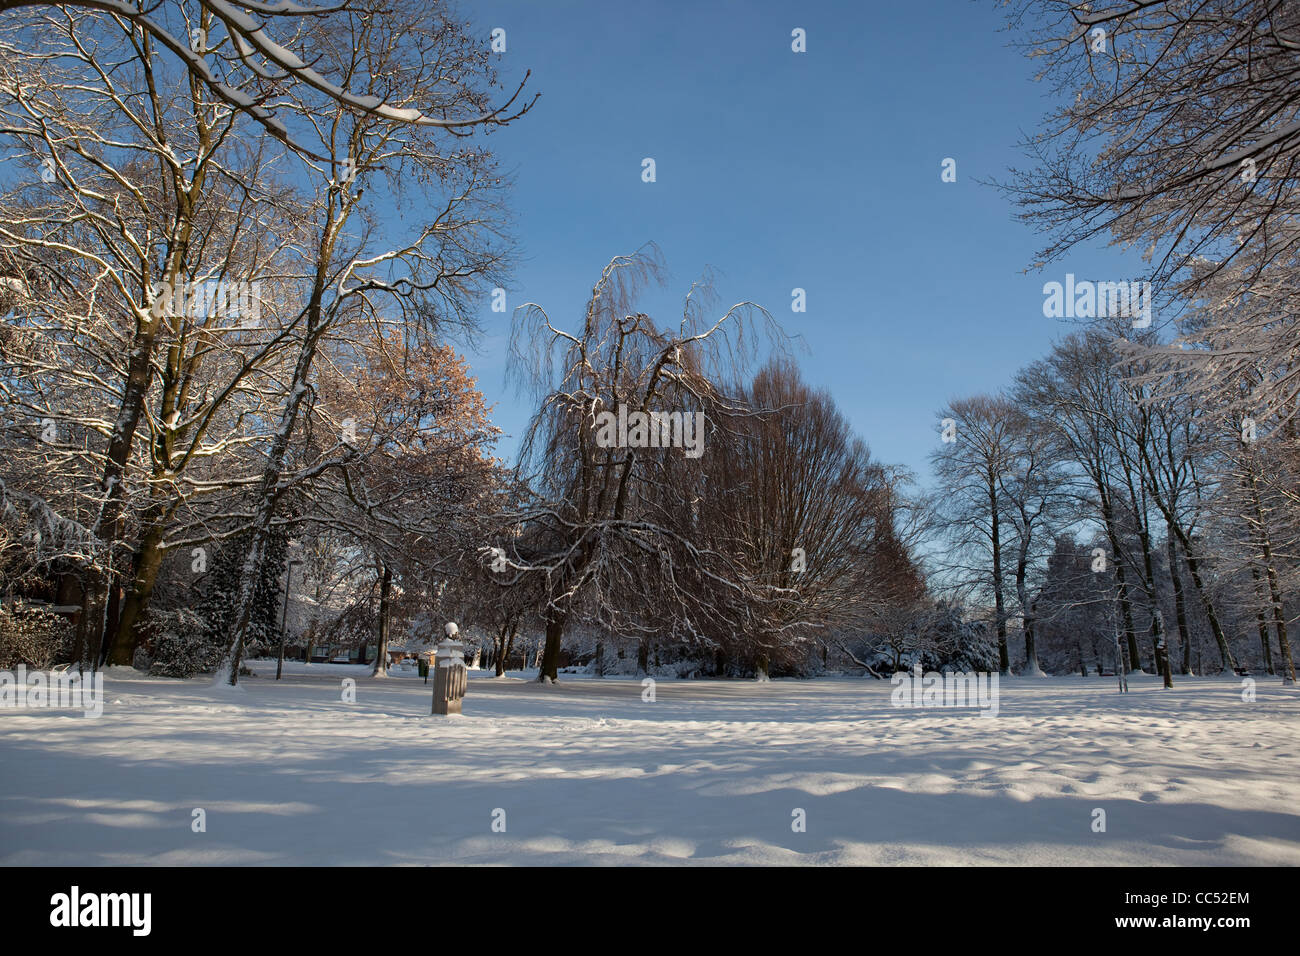 Voir d'Walburgh park dans la ville flamande de Sint-Niklaas en Belgique. Les arbres sont couverts de neige. Banque D'Images